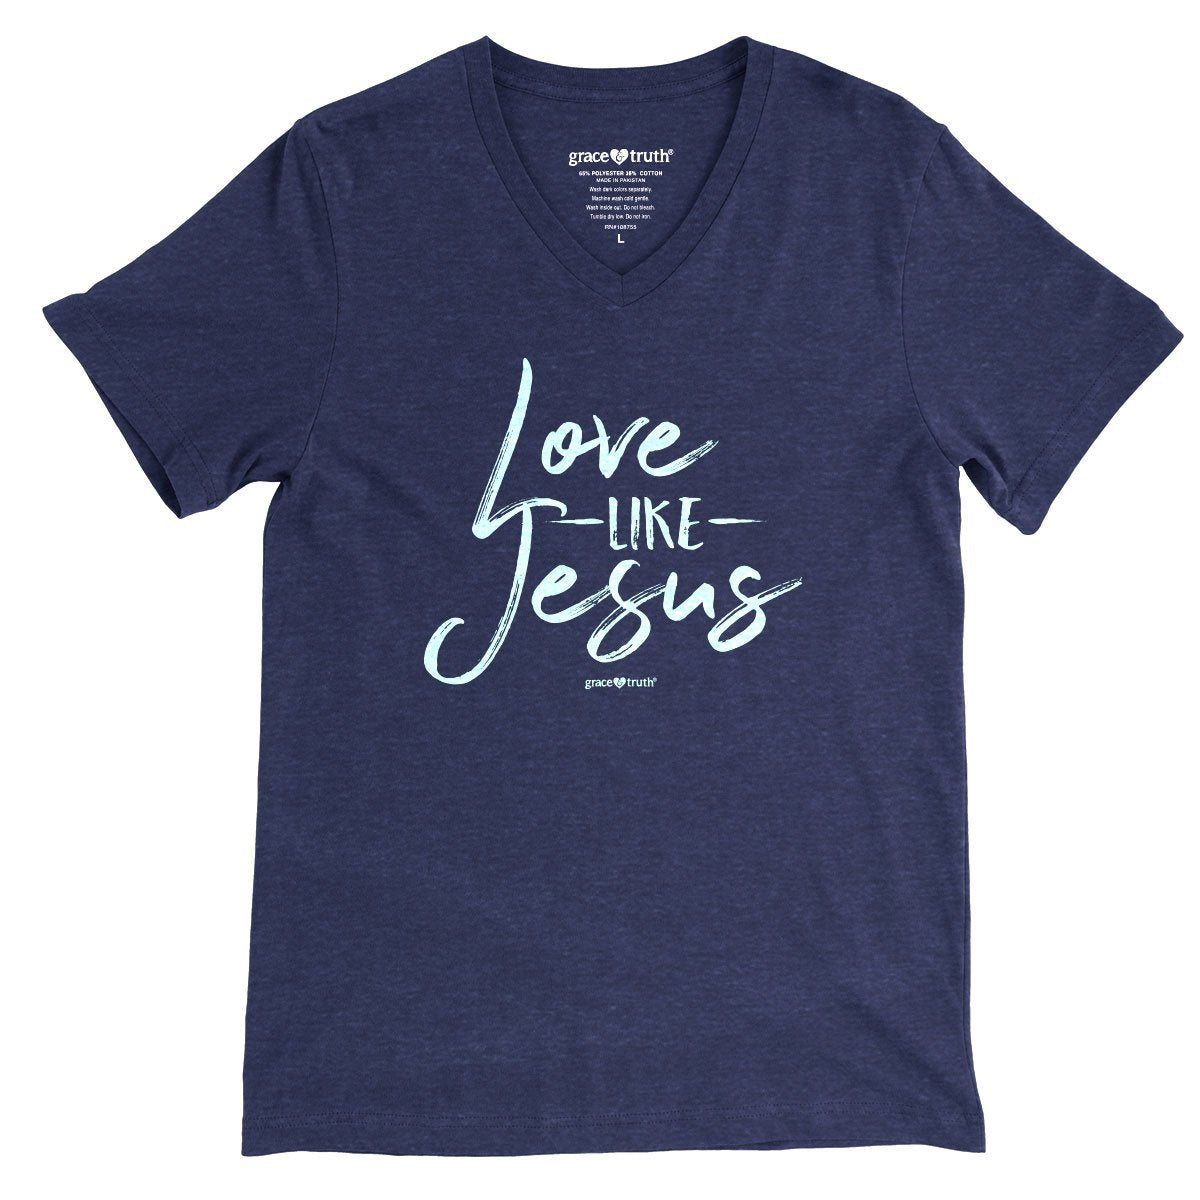 Cherished Girl Grace & Truth Love like Jesus V-Neck Girlie Christian Bright T Shirt